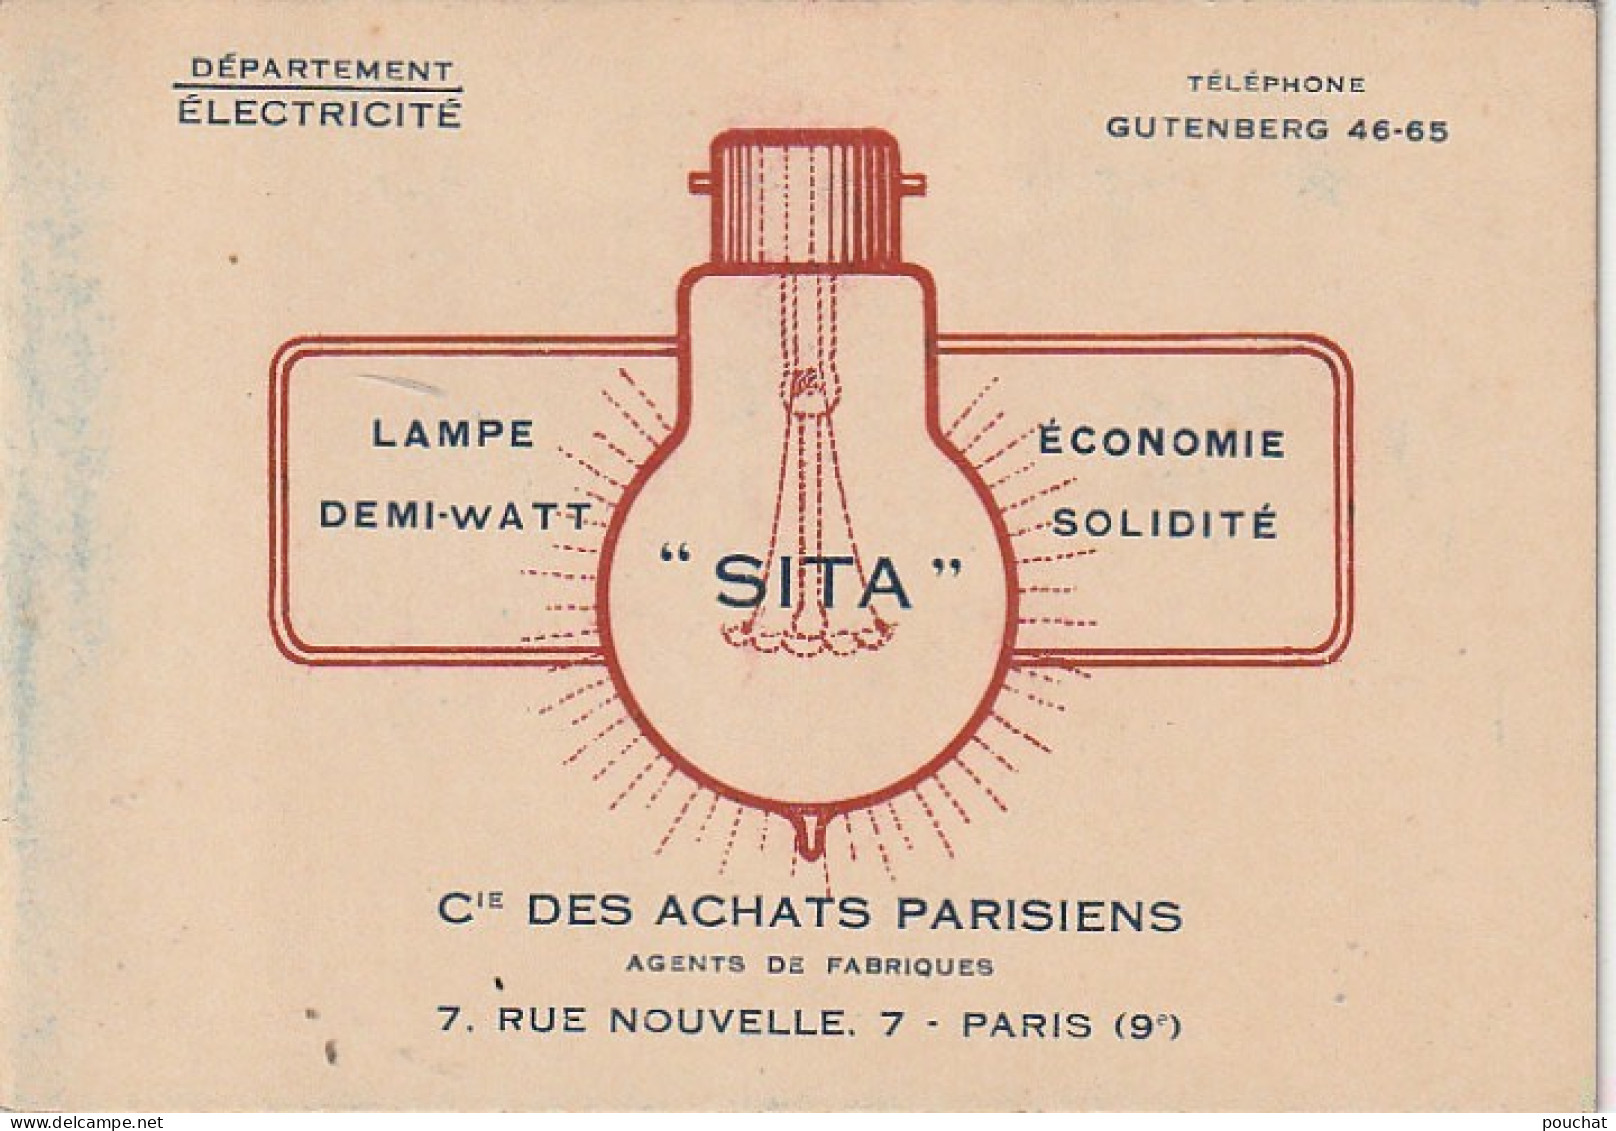 Z+ 25- (75) Cie DES ACHATS PARISIENS , DEPT ELECTRICITE , PARIS 9e - LAMPES FILAMENTS METALLIQUES - TARIFS - Electricité & Gaz